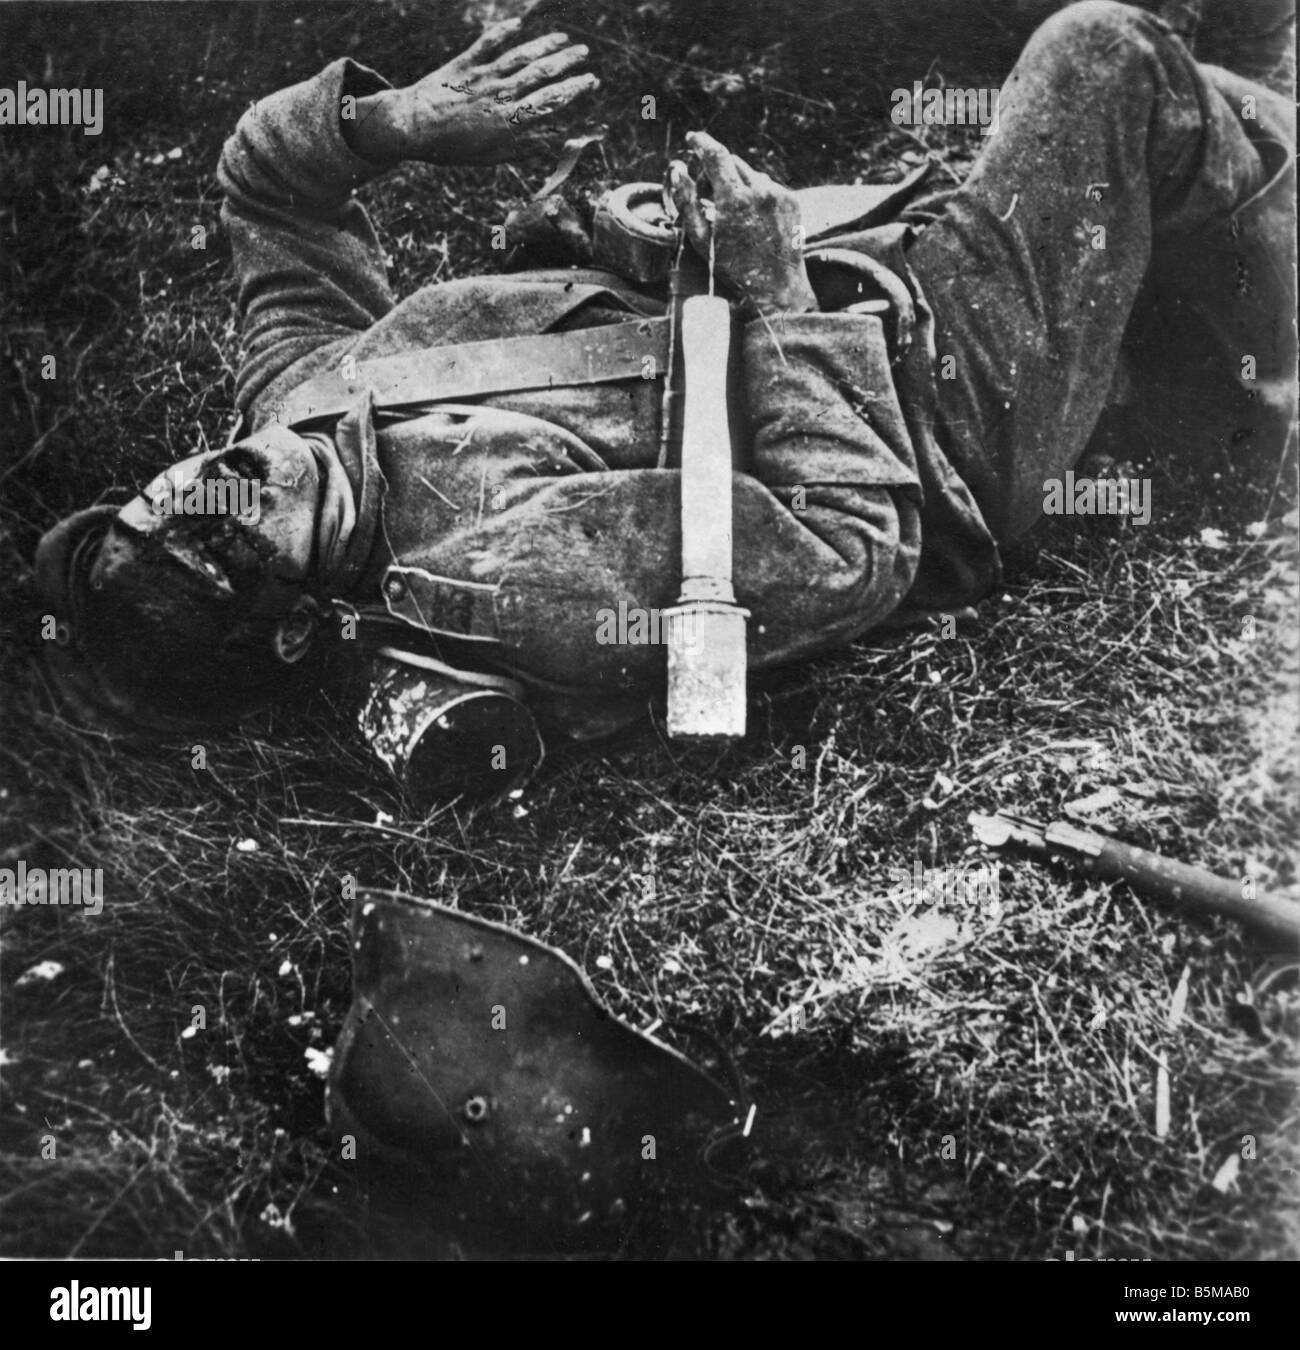 2 G55 W1 1915 7 deutsche Soldaten in Aktion WWI Geschichte WWI Western Front deutscher getötet Soldat getötet in Aktion mit Hand Granad Stockfoto